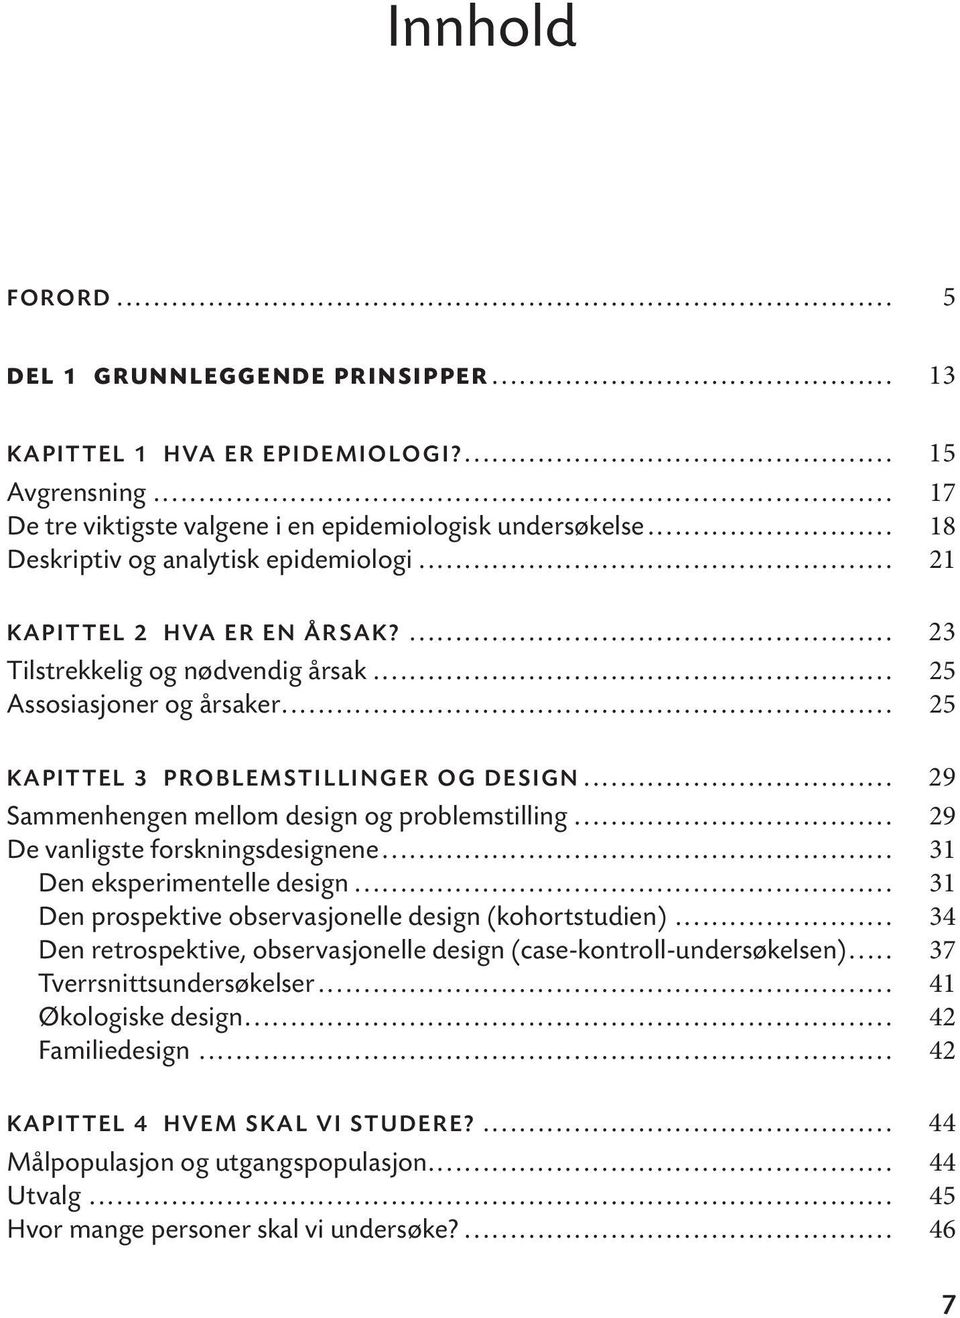 .. 29 Sammenhengen mellom design og problemstilling... 29 De vanligste forskningsdesignene... 31 Den eksperimentelle design... 31 Den prospektive observasjonelle design (kohortstudien).